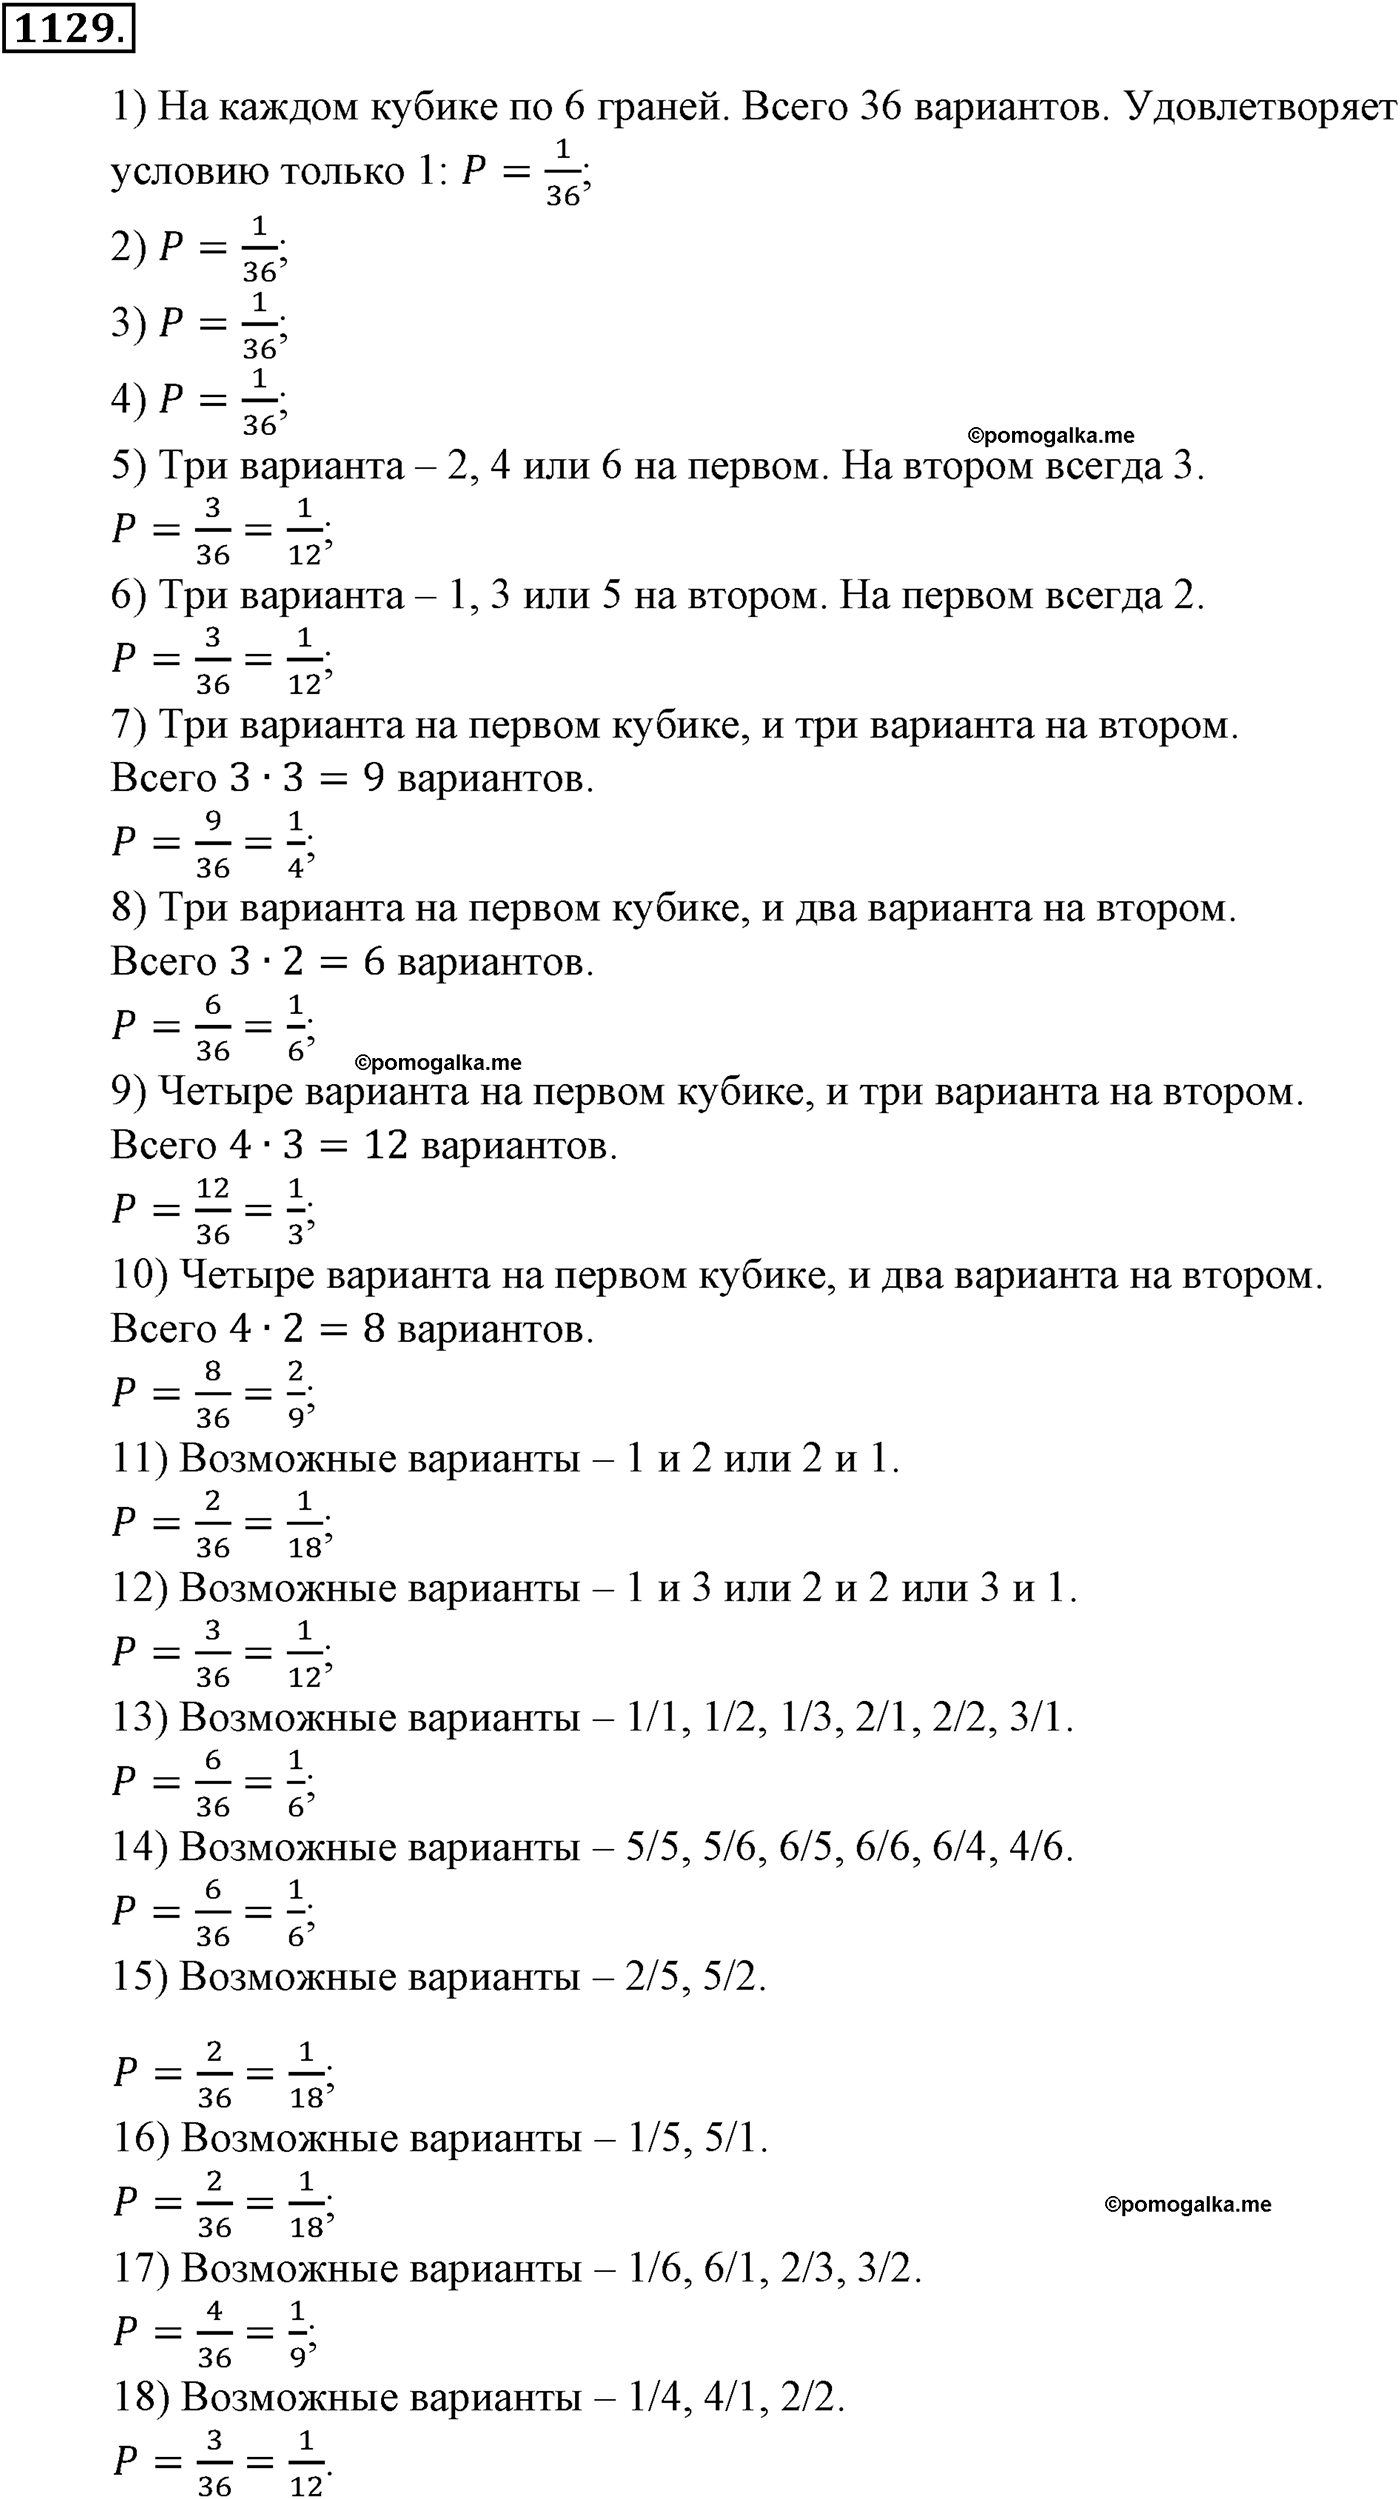 разбор задачи №1129 по алгебре за 10-11 класс из учебника Алимова, Колягина